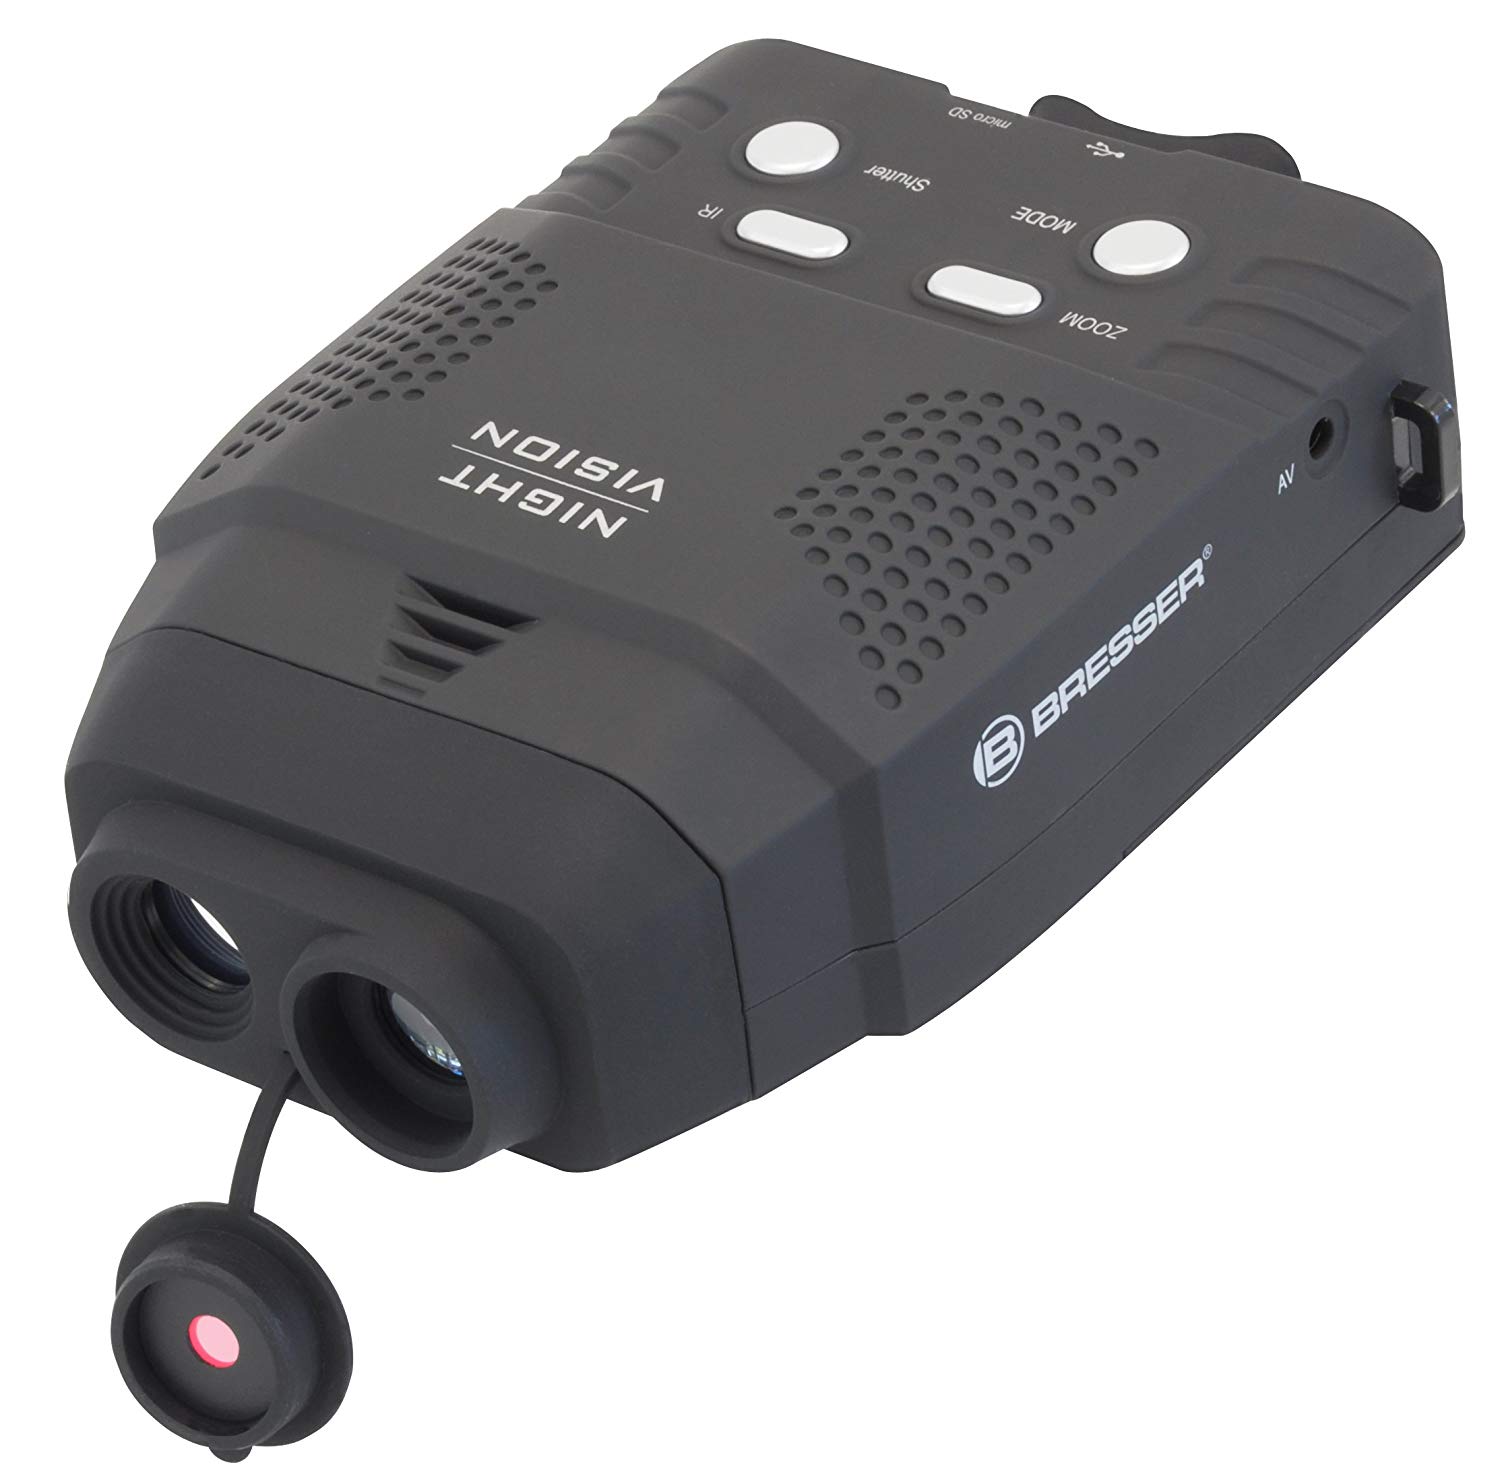 Dispositivo digital de visión nocturna con función de grabación Bresser